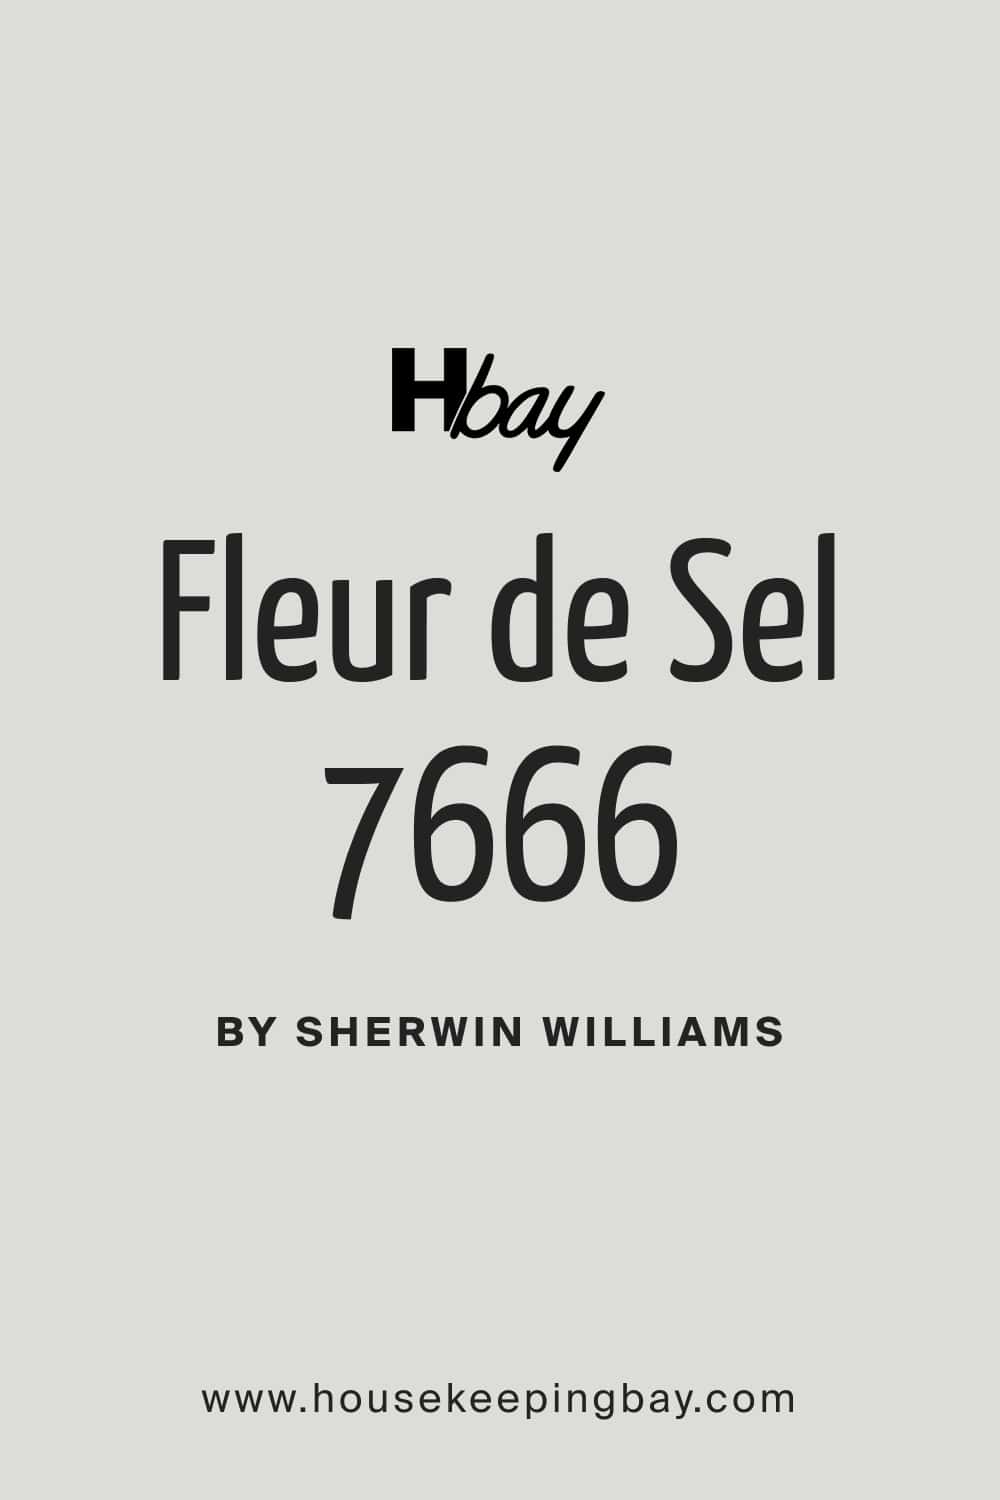 Fleur de Sel SW 7666 by Sherwin Williams